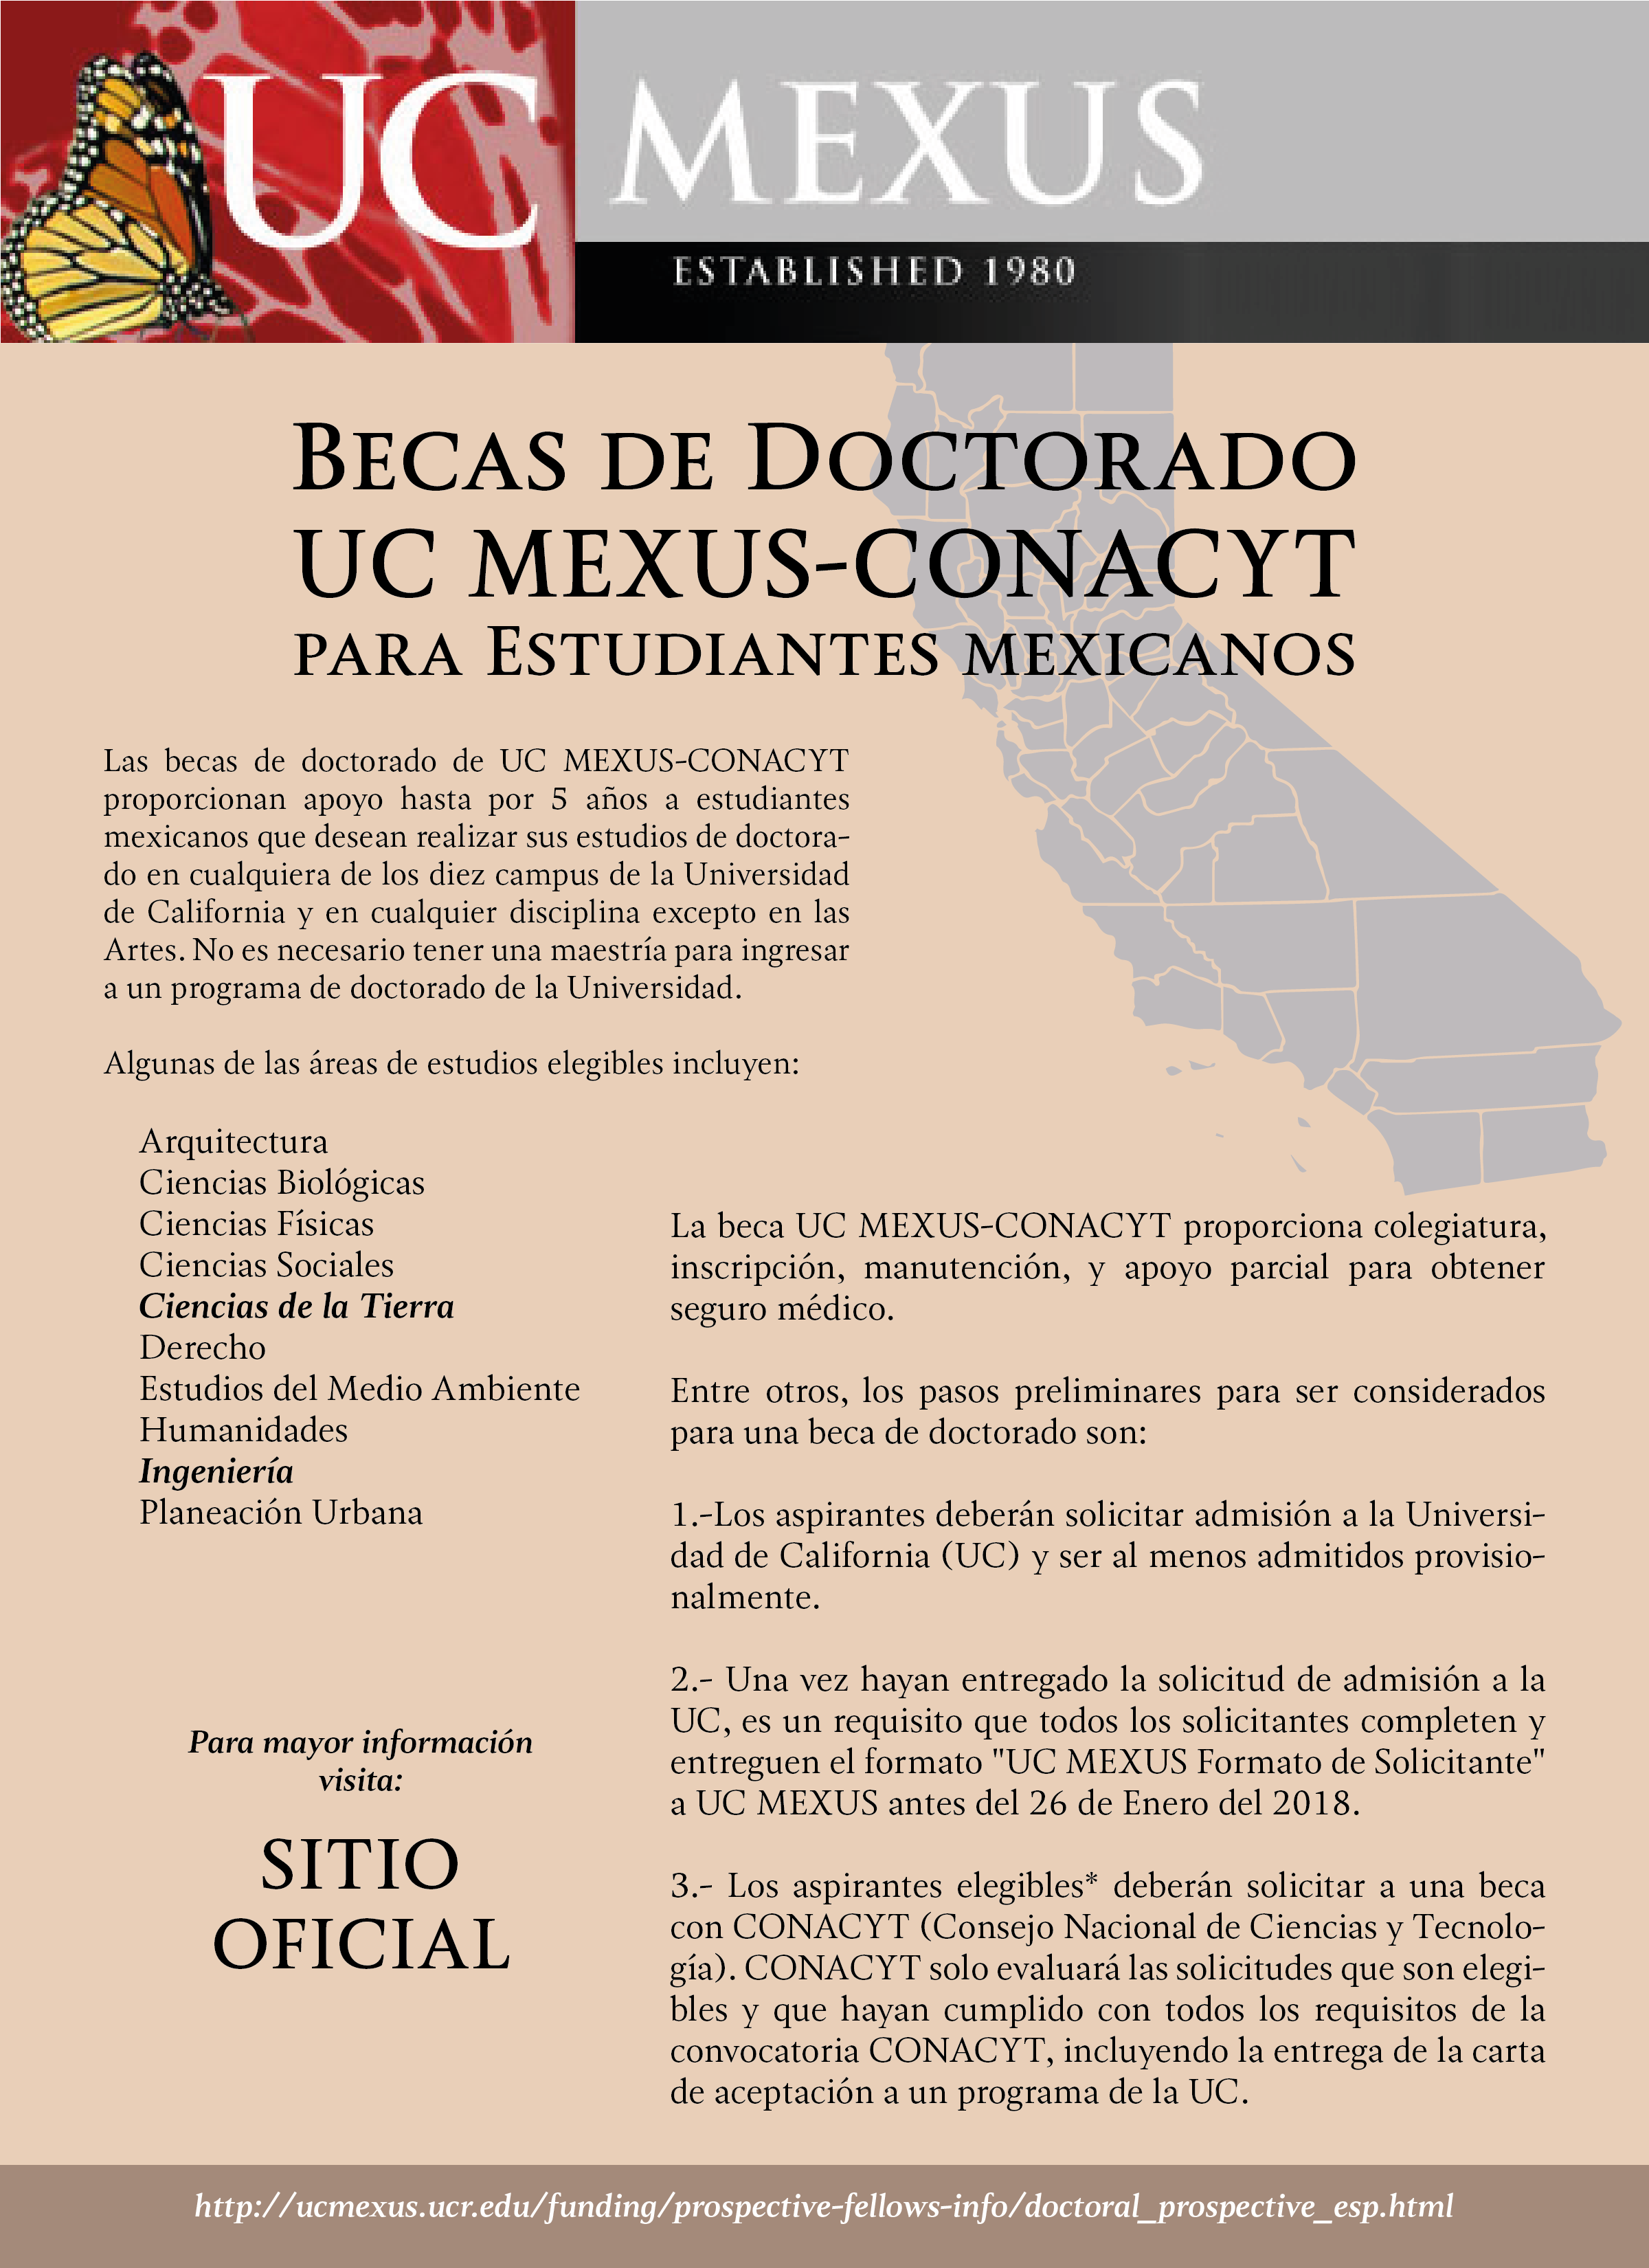 Becas de doctorado UC MEXUS-CONACYT